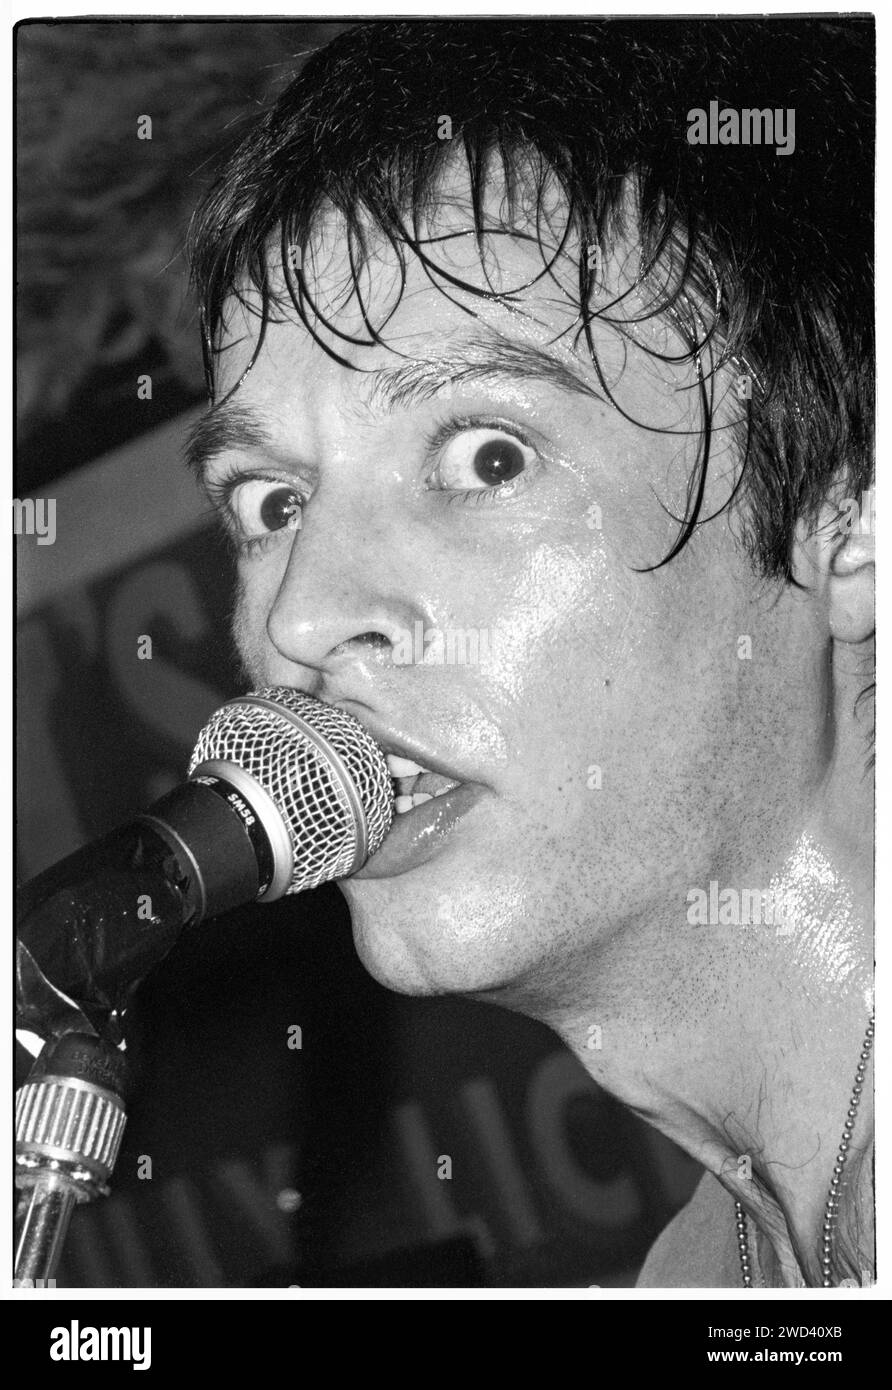 Ed Borrie della band punk S*M*A*S*H (SMASH) che suona dal vivo al leggendario TJ's di Newport, Galles, Regno Unito il 21 marzo 1994. Foto: Rob Watkins. INFO: SMASH, una band punk britannica degli anni '90, ha abbracciato l'etica del fai da te. Il loro suono energetico, alimentato da testi politicamente carichi, trovò un seguito. Inni come "i Want to Kill Somebody" e "Shame" hanno catturato lo spirito ribelle della scena punk durante i loro anni di attività. Foto Stock